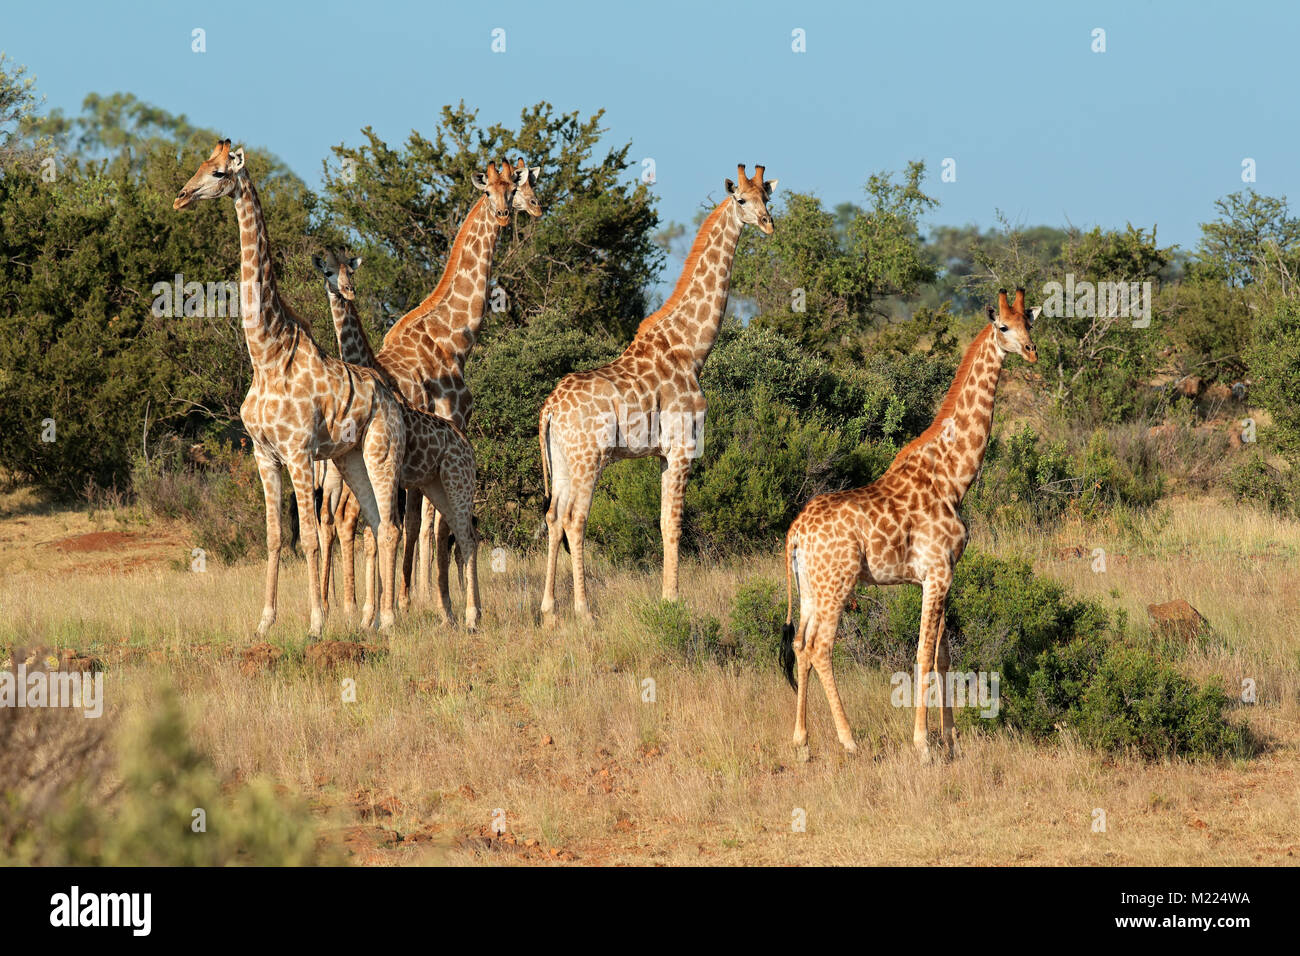 Petit troupeau de girafes (Giraffa camelopardalis) dans l'habitat naturel, l'Afrique du Sud Banque D'Images